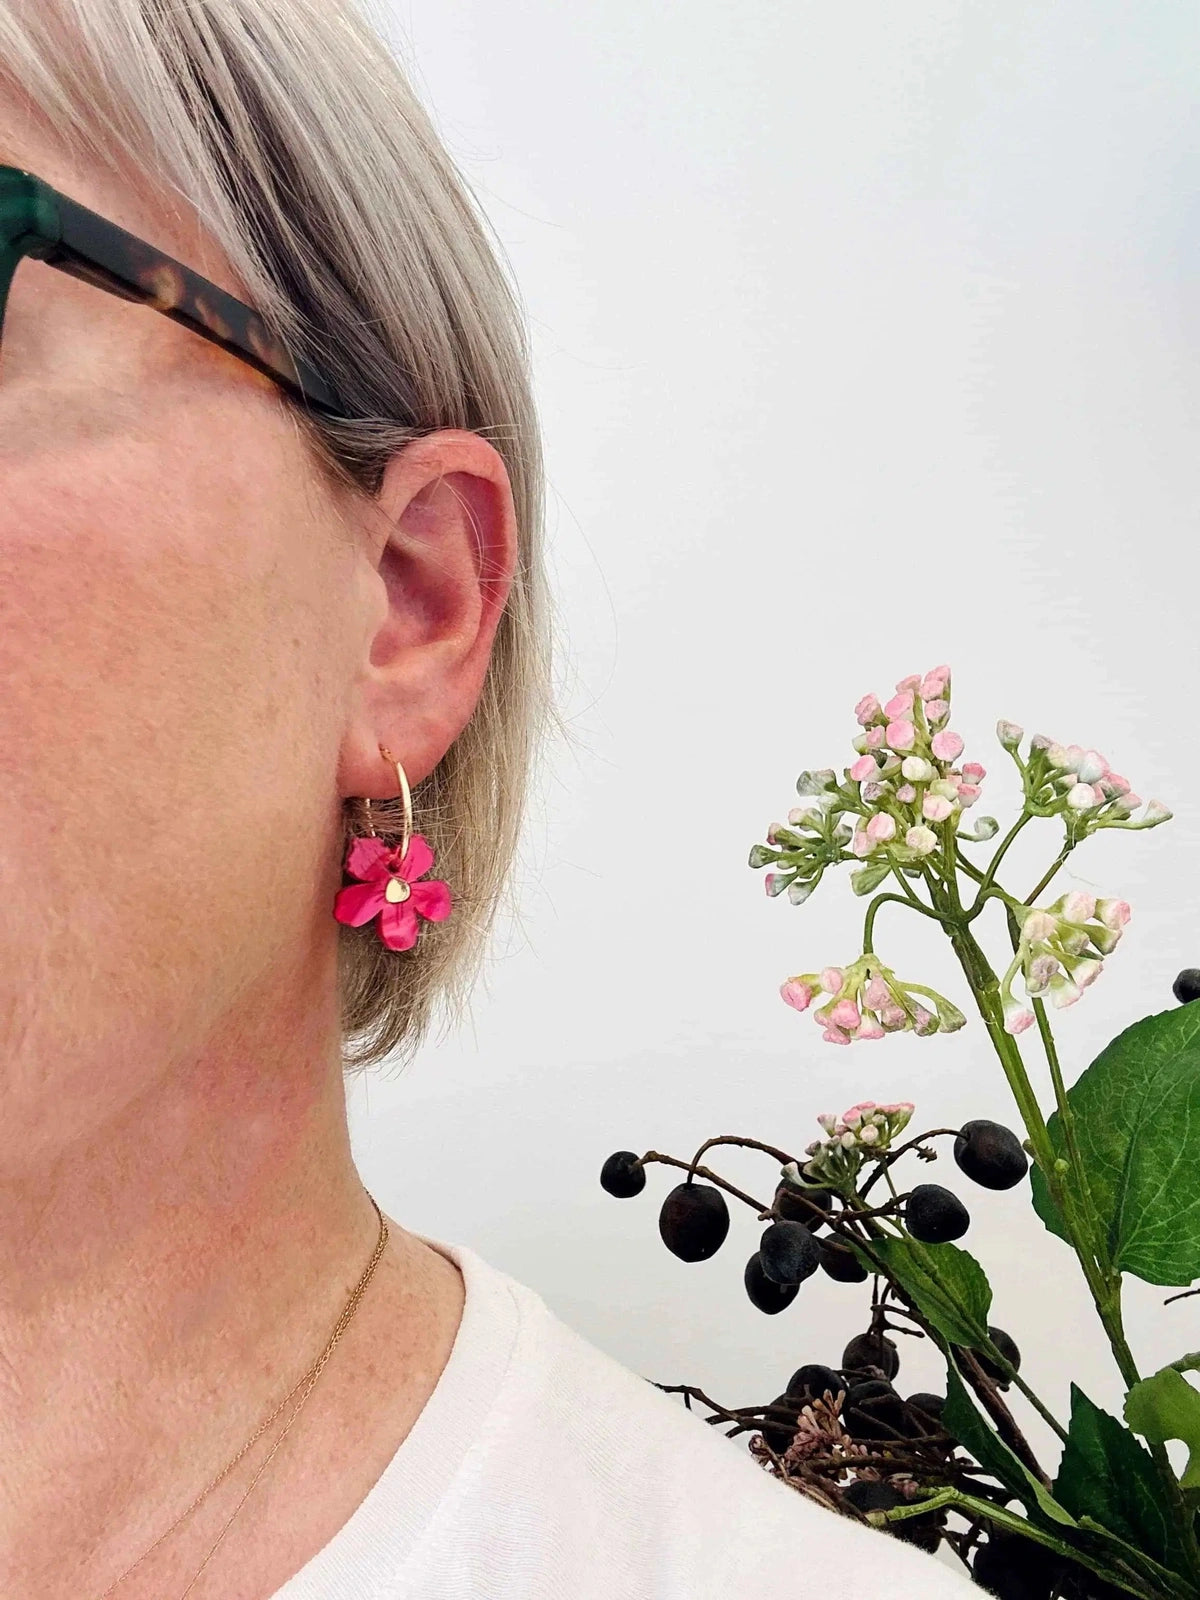 Hagen & Co Wildflowers Earrings Buttercup